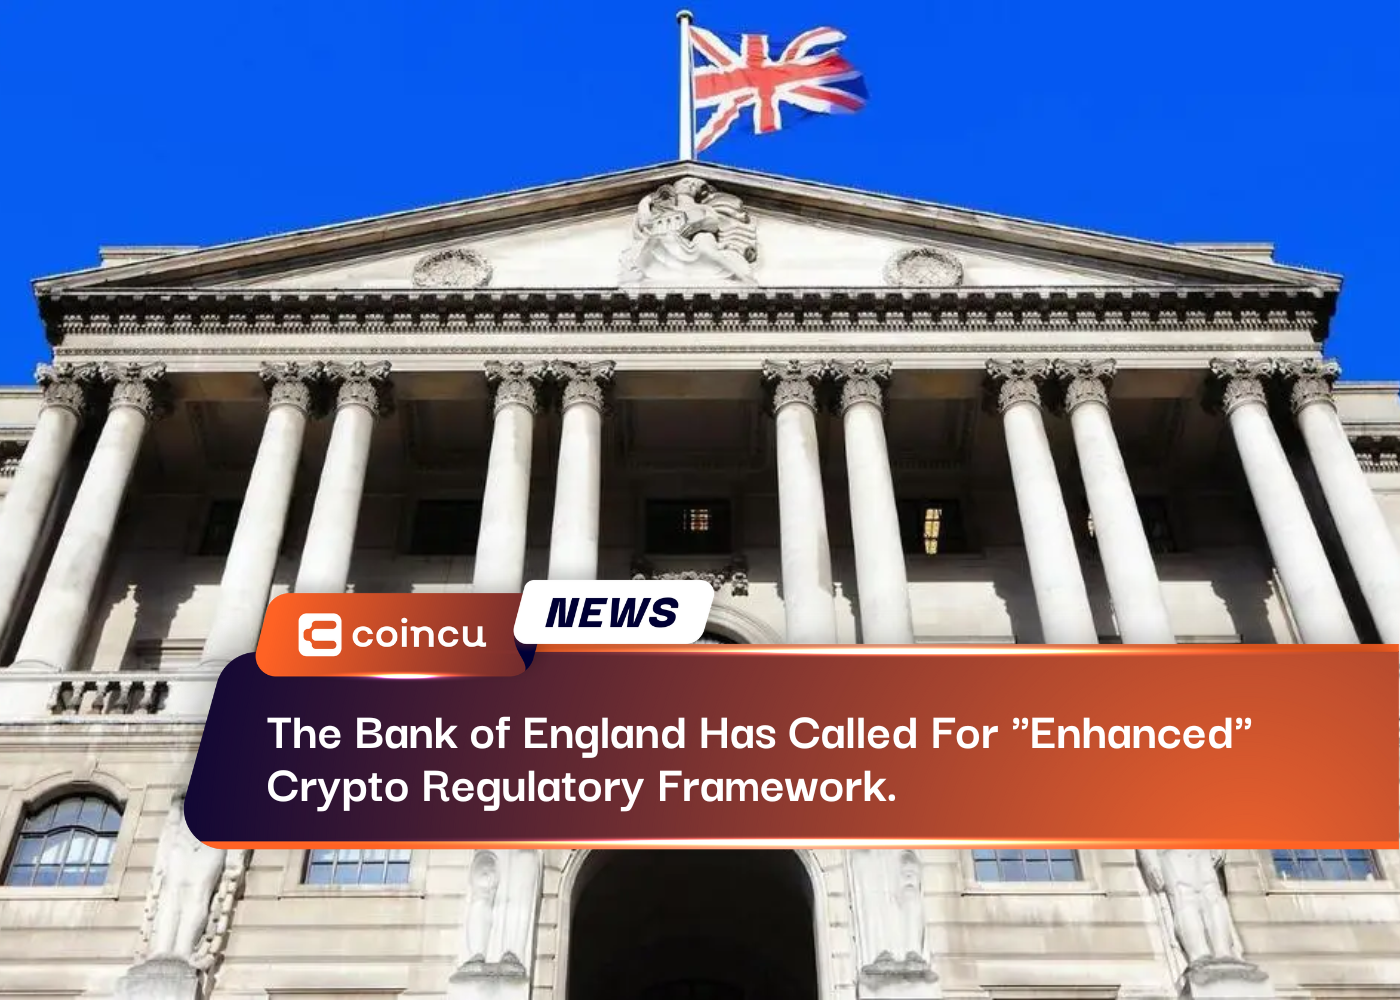 O Banco da Inglaterra pediu uma estrutura regulatória de criptografia "aprimorada".